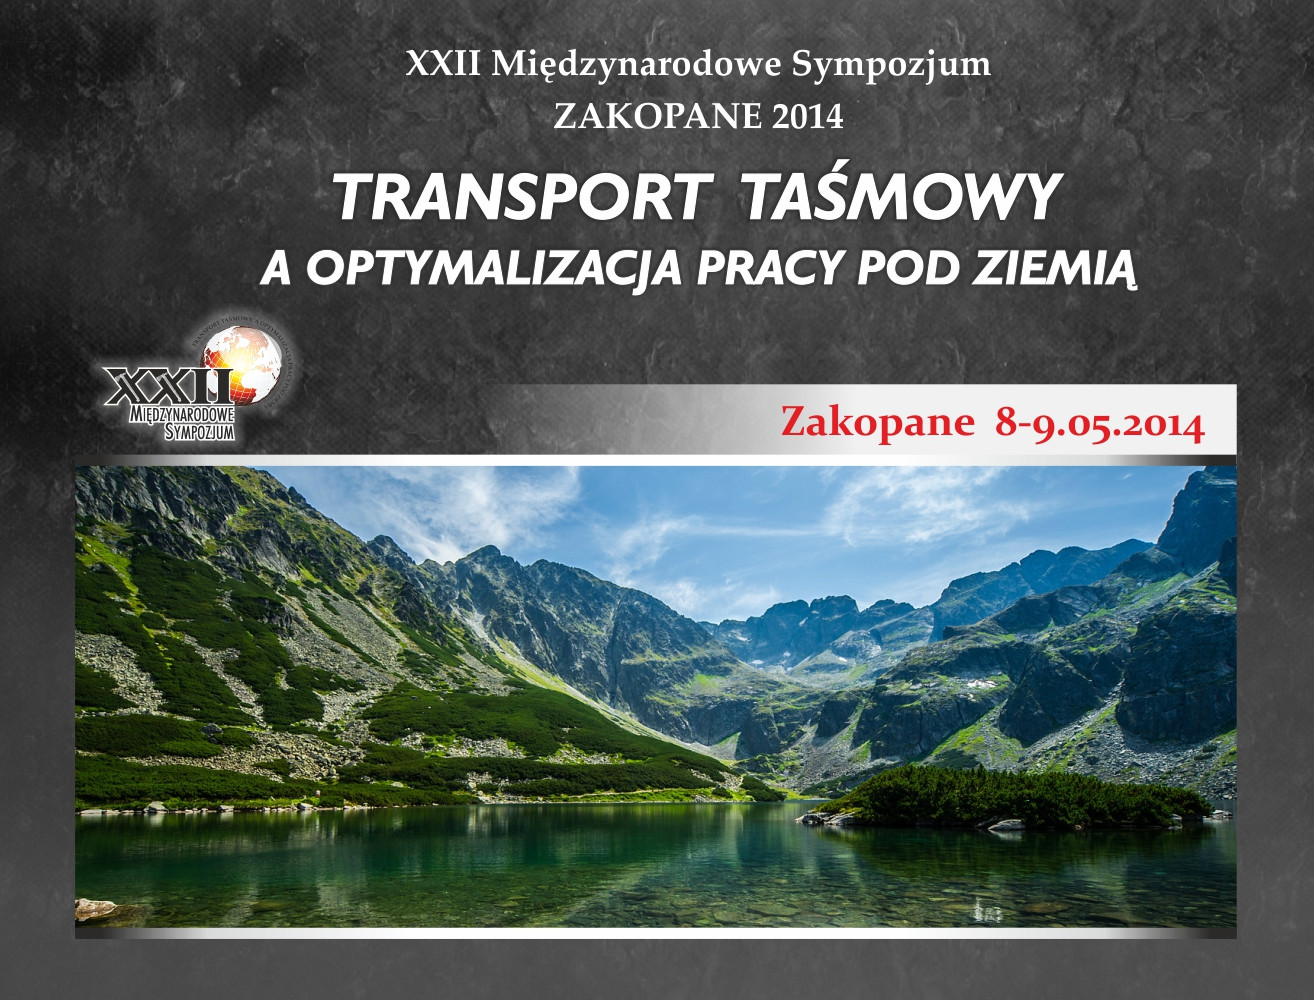 XXII Międzynarodowe Sympozjum Zakopane 2014